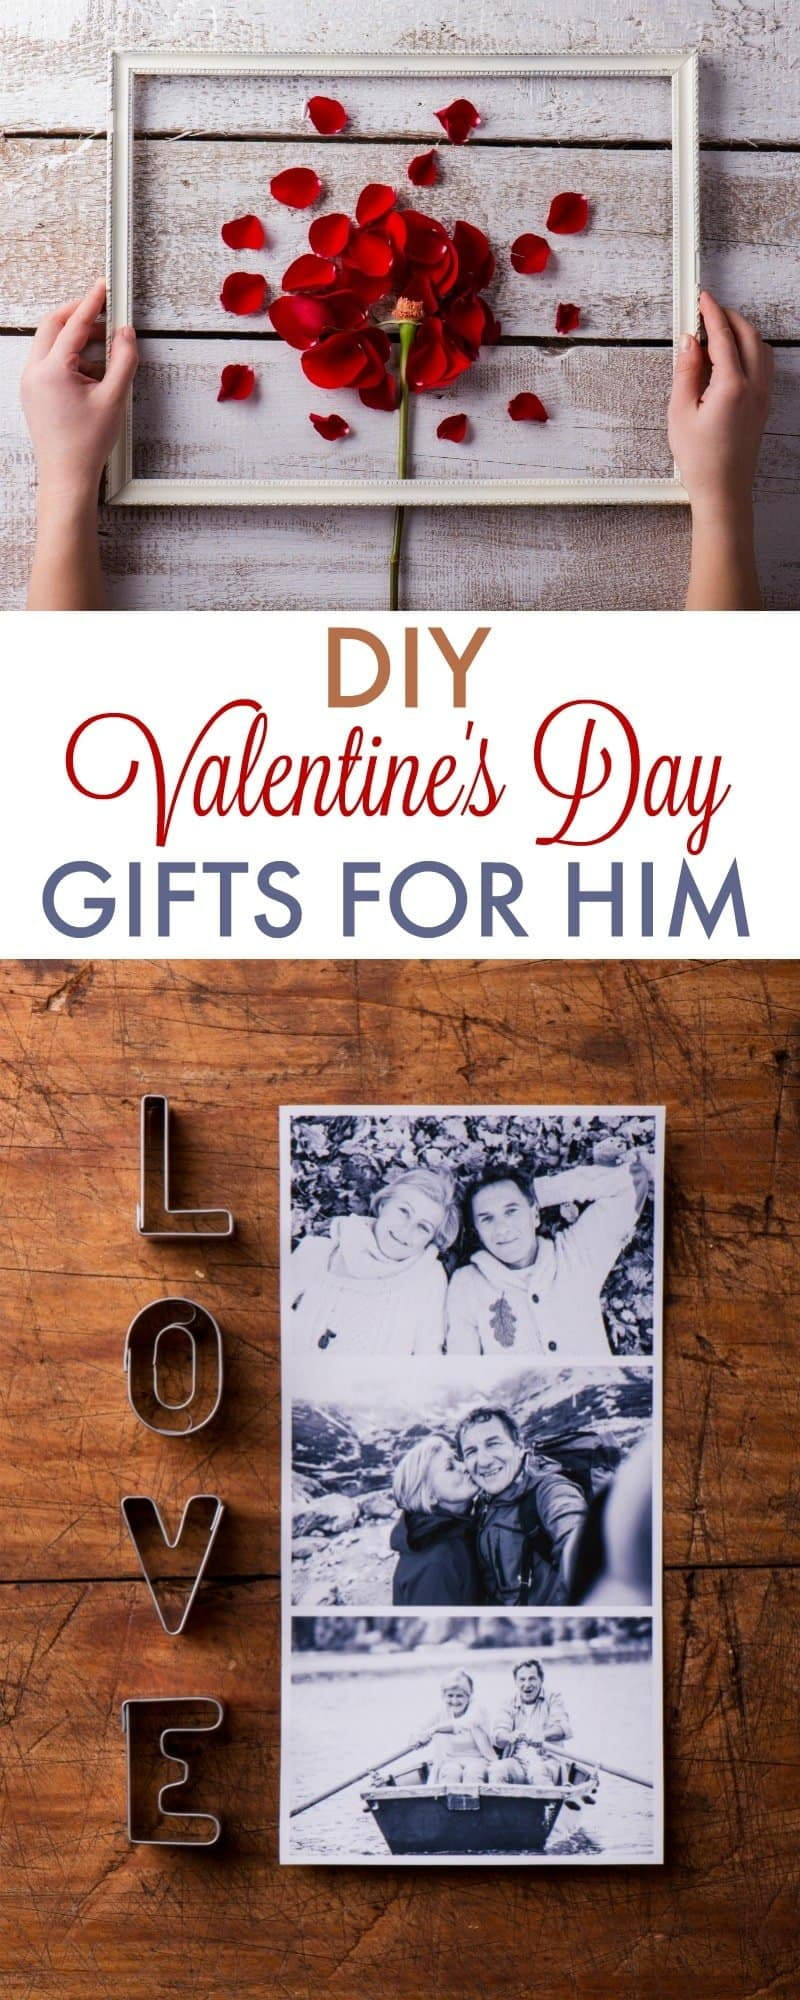 DIY Boyfriend Gifts
 DIY Valentine s Day Gifts for Boyfriend 730 Sage Street